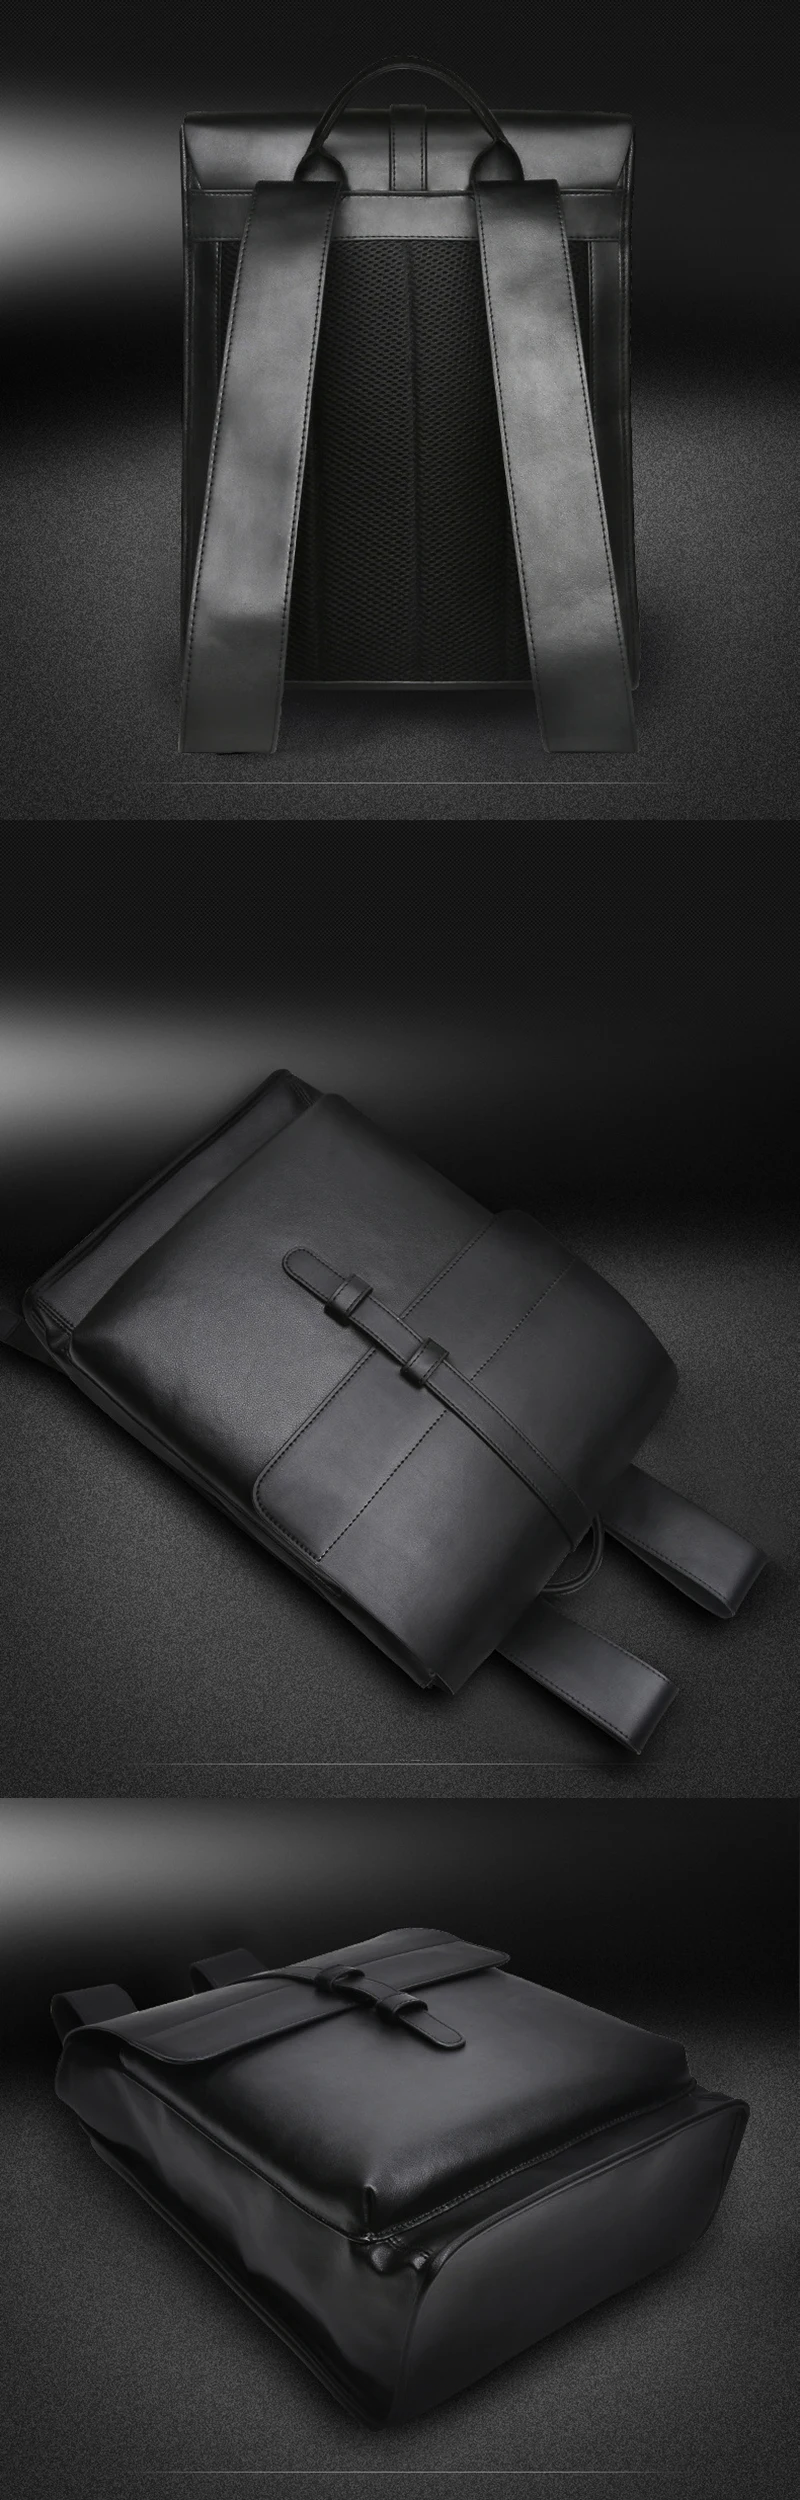 GNWXY мягкая кожа нейтральный для мужчин бизнес рюкзак износостойкий 16 дюймов ноутбук школьный рюкзак дорожные сумки для подростковые